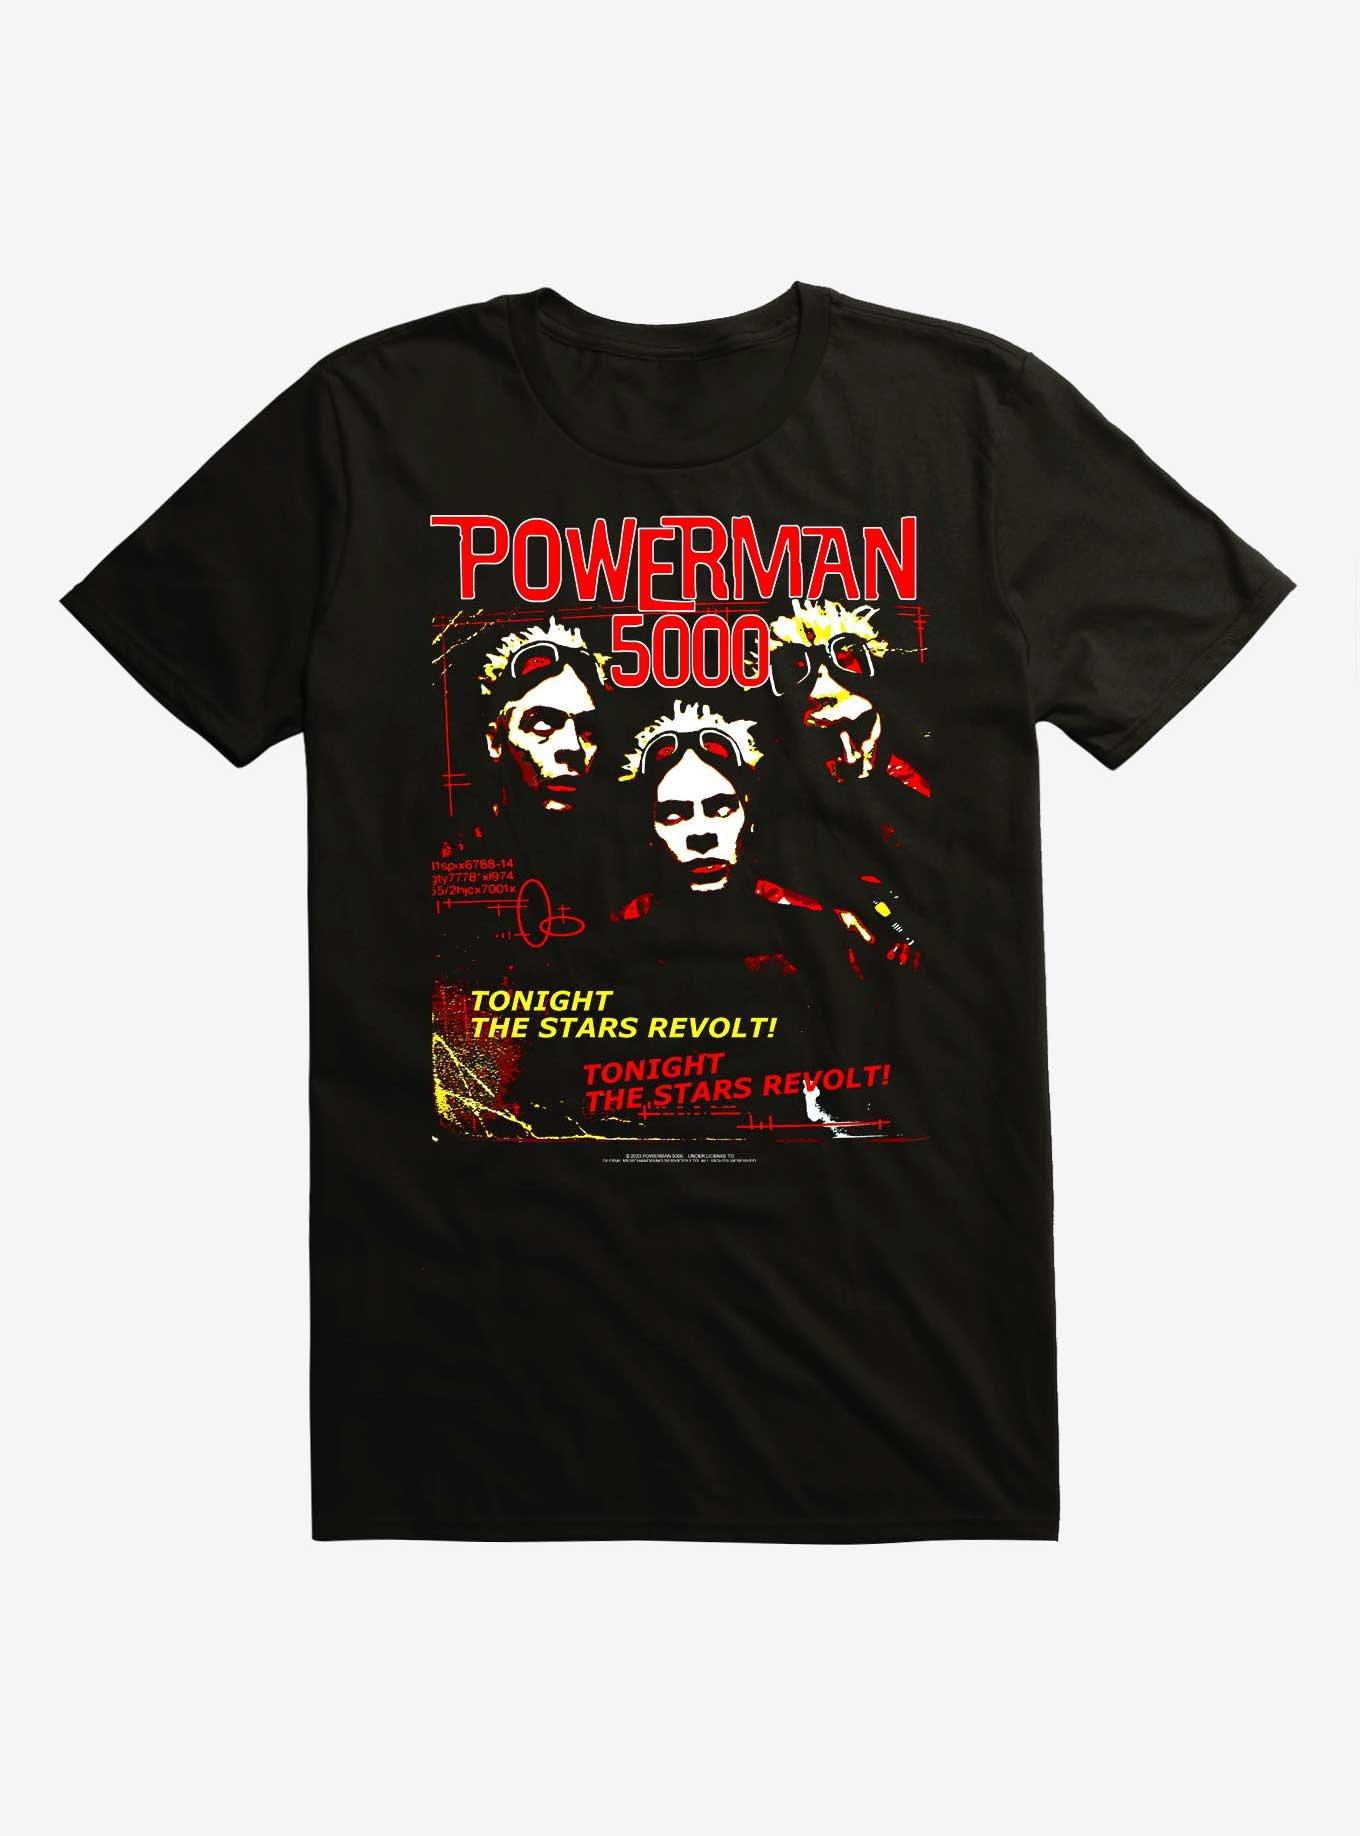 Powerman 5000 The Stars Revolt T-Shirt, BLACK, hi-res